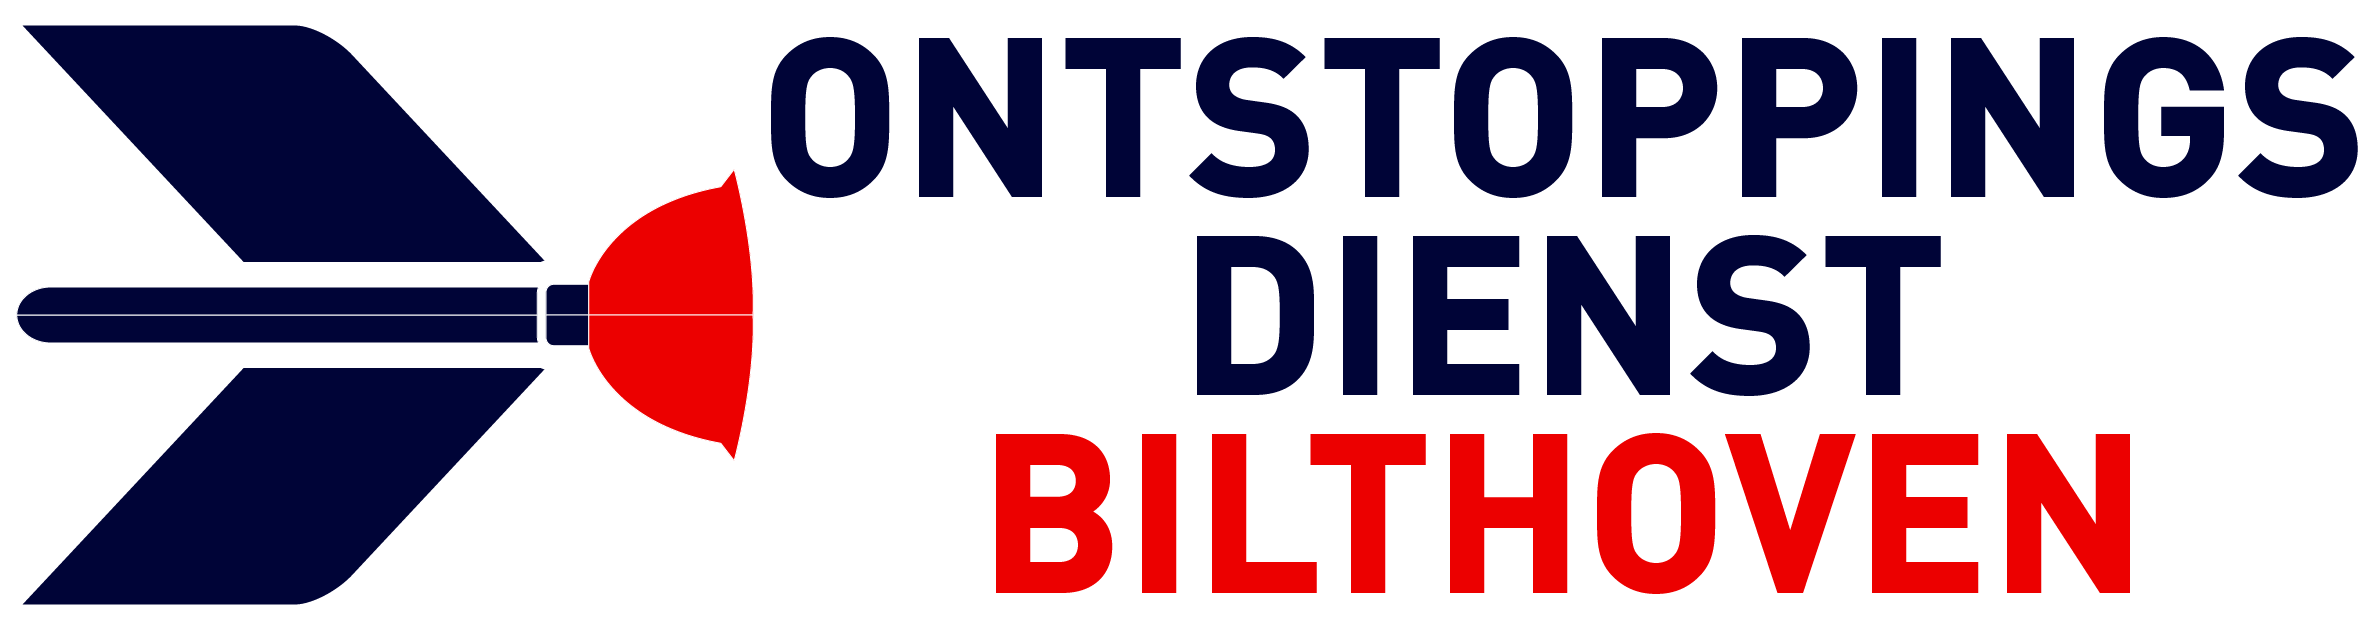 Ontstoppingsdienst Bilthoven logo